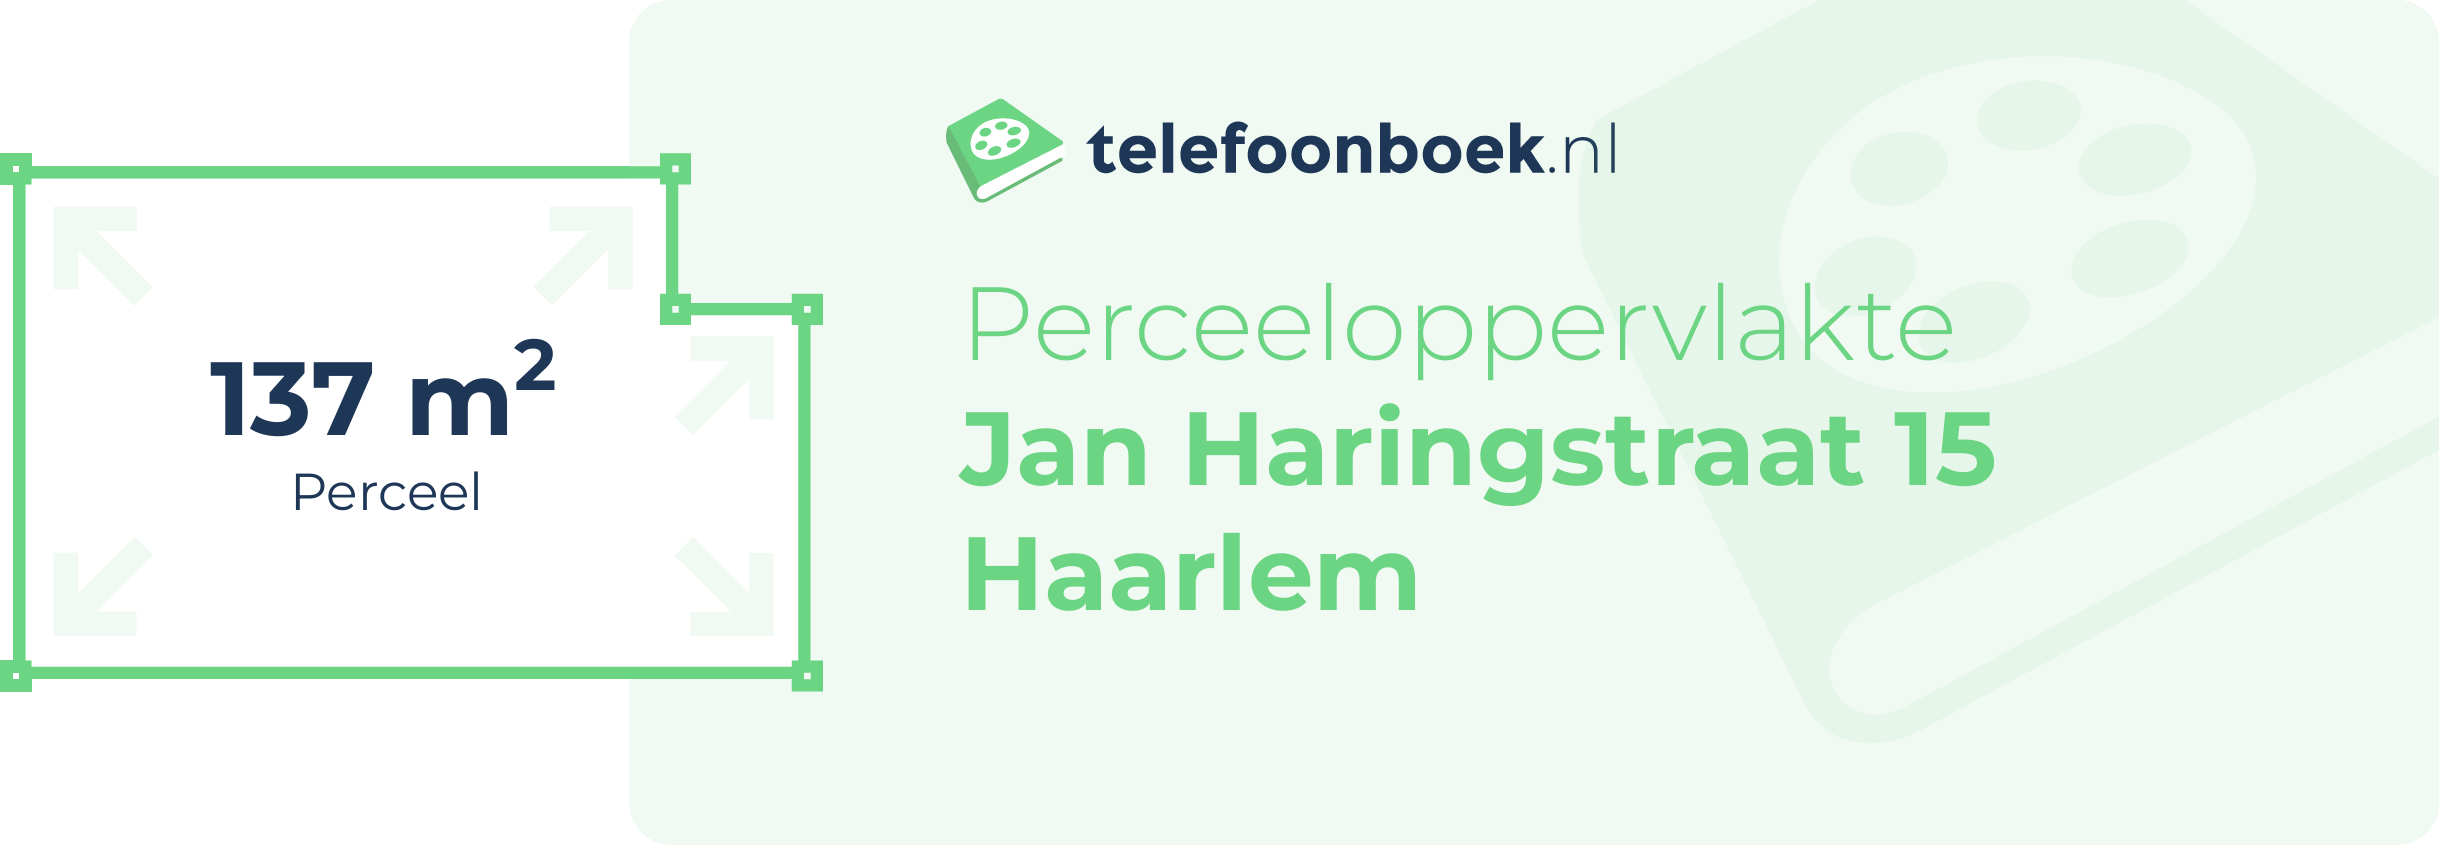 Perceeloppervlakte Jan Haringstraat 15 Haarlem